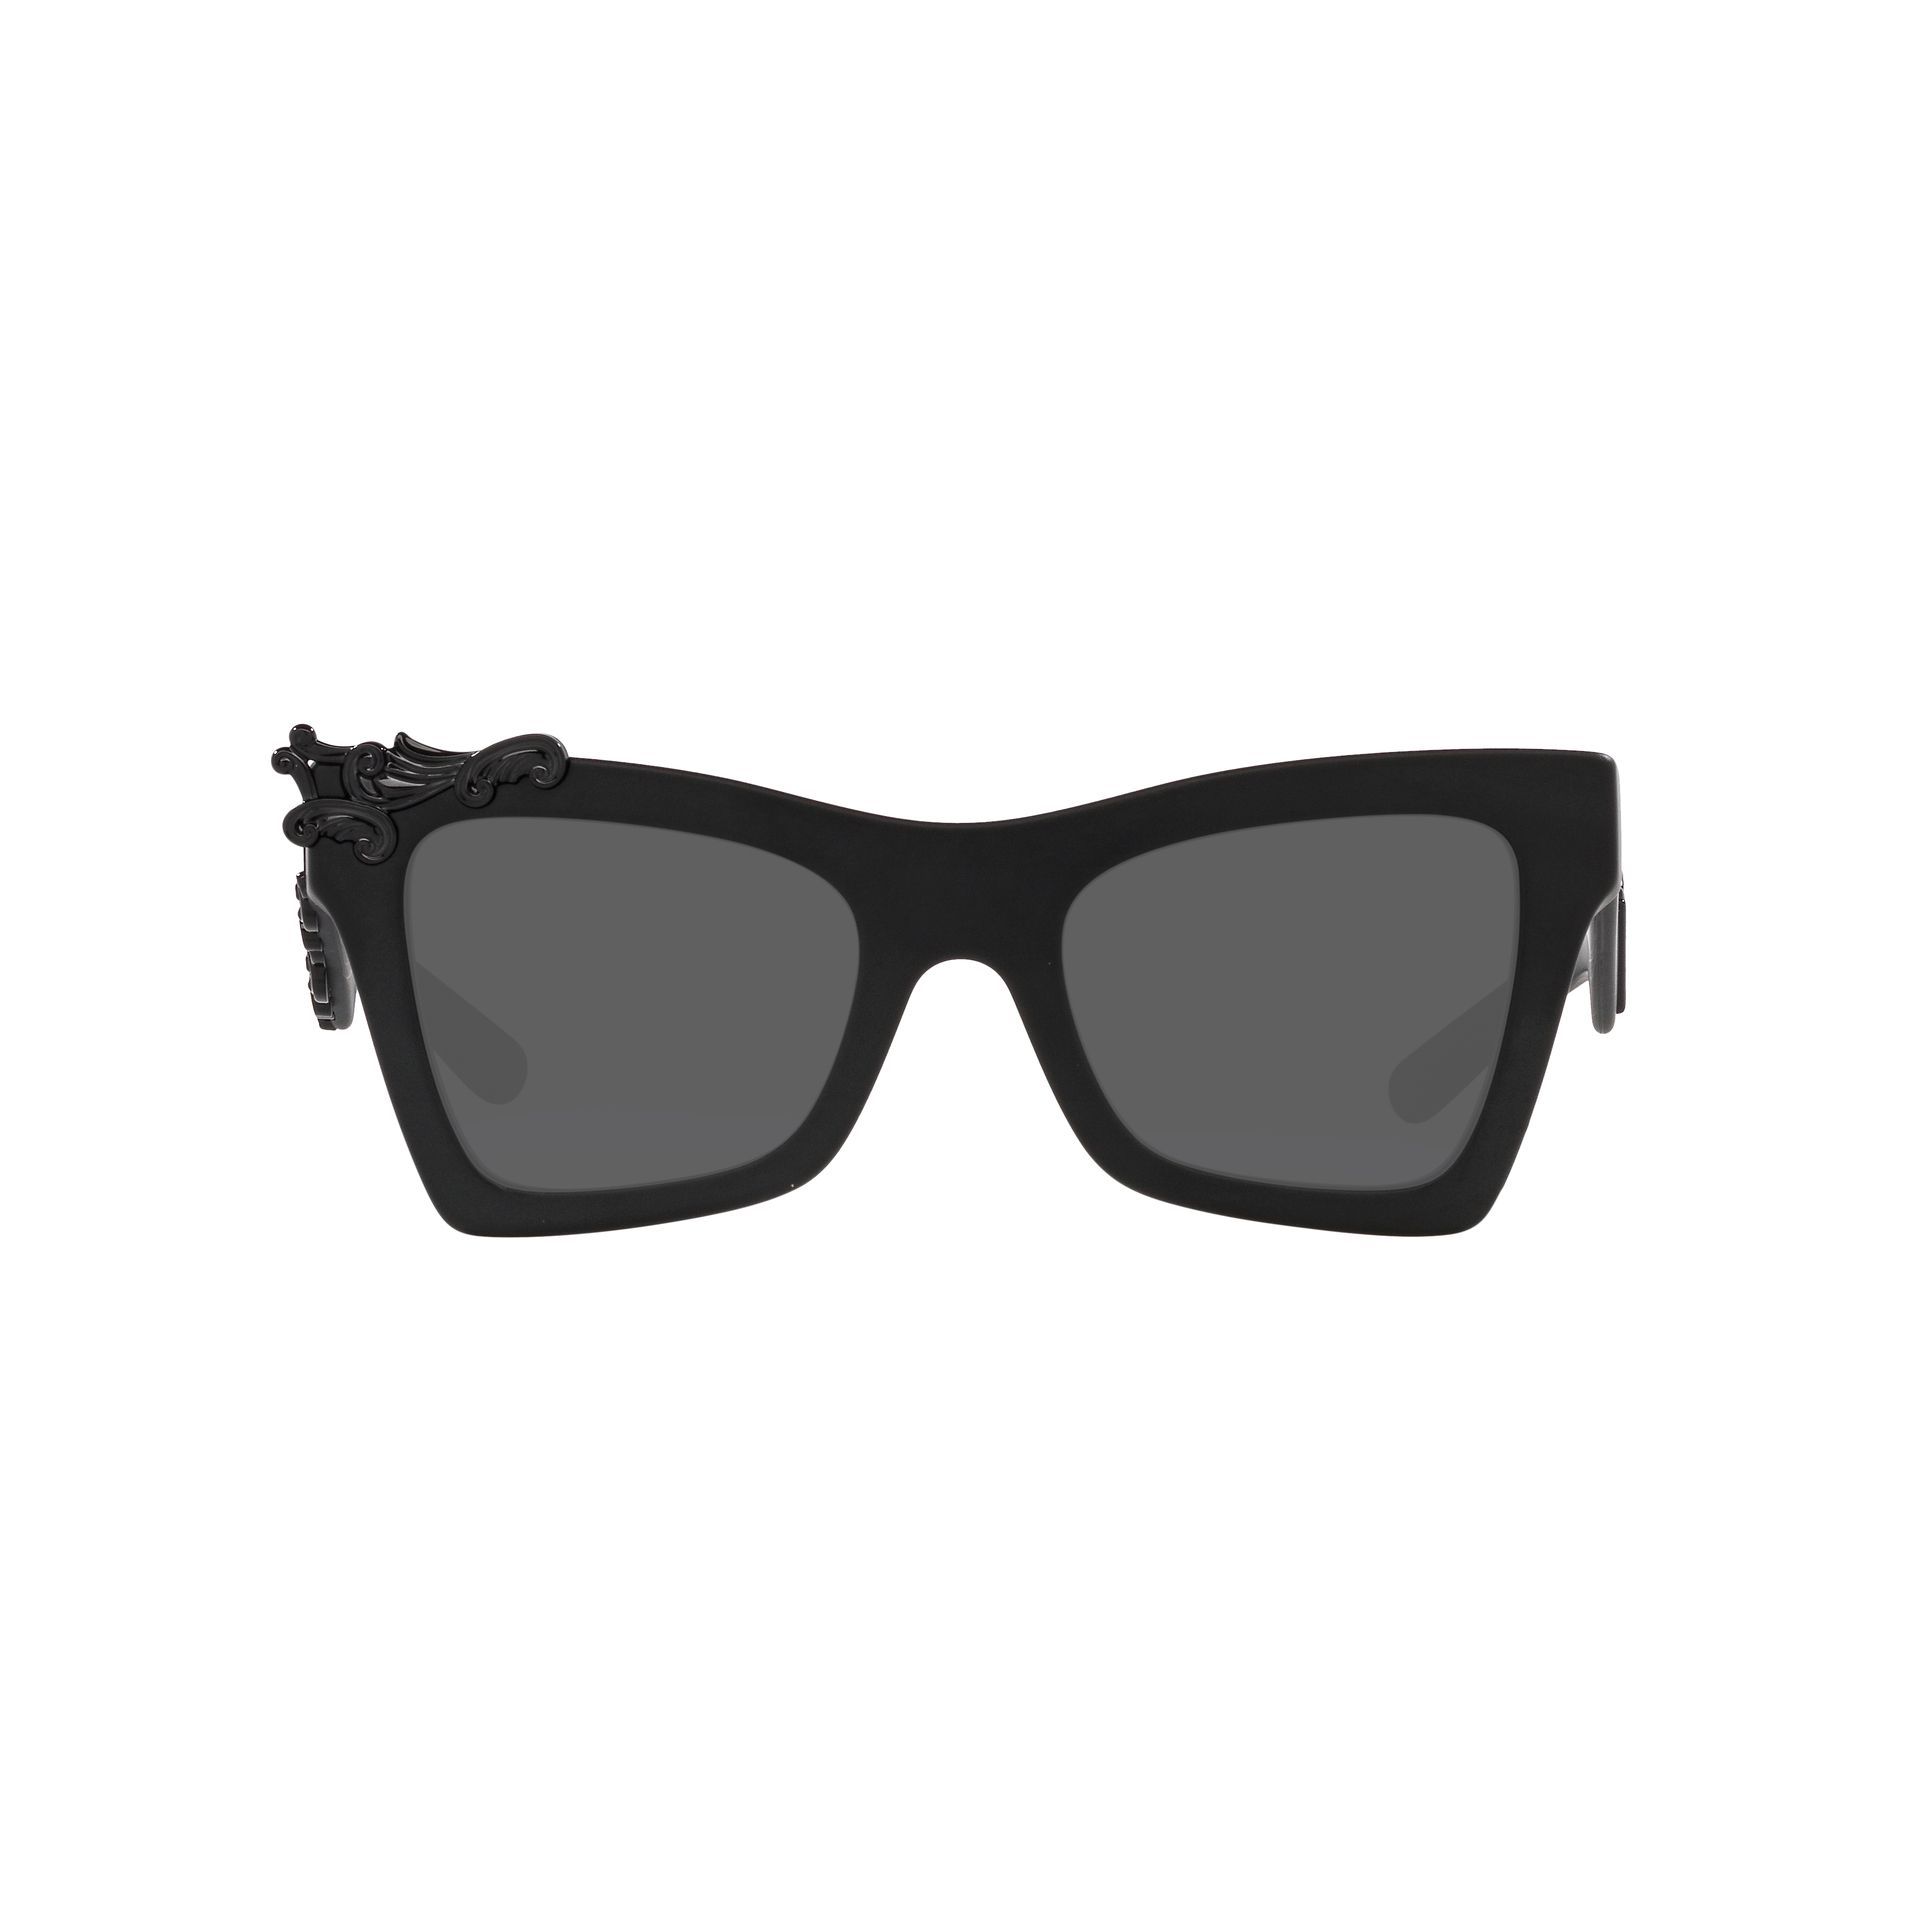 0DG4434 Cat Eye Sunglasses 25256G - size 51